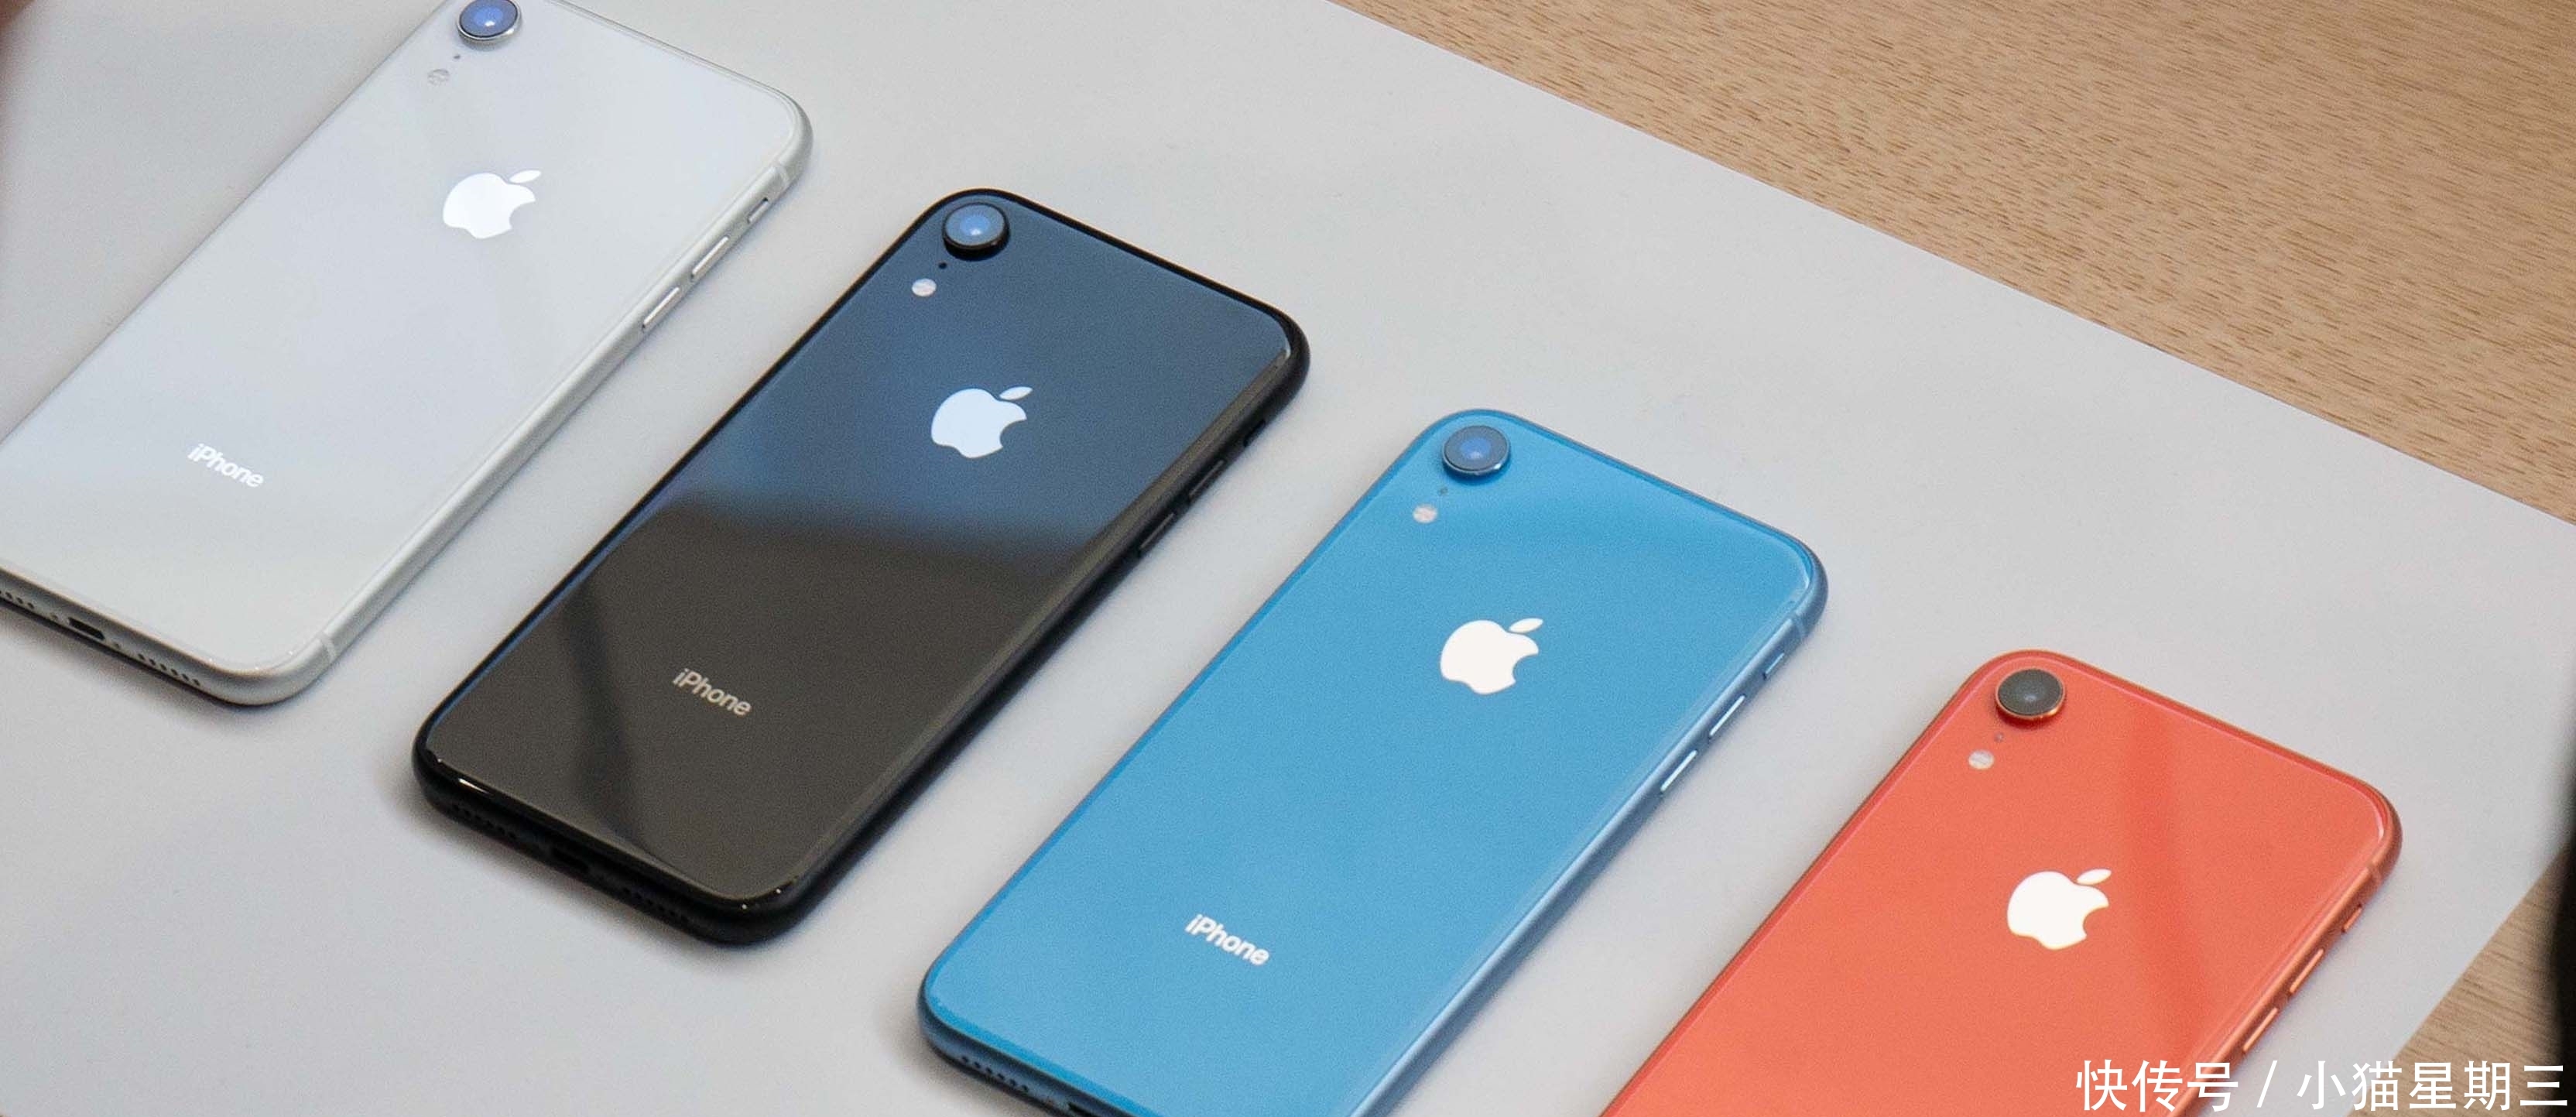 Phone X狂降2200块成为新冰点,买iPhone XR的